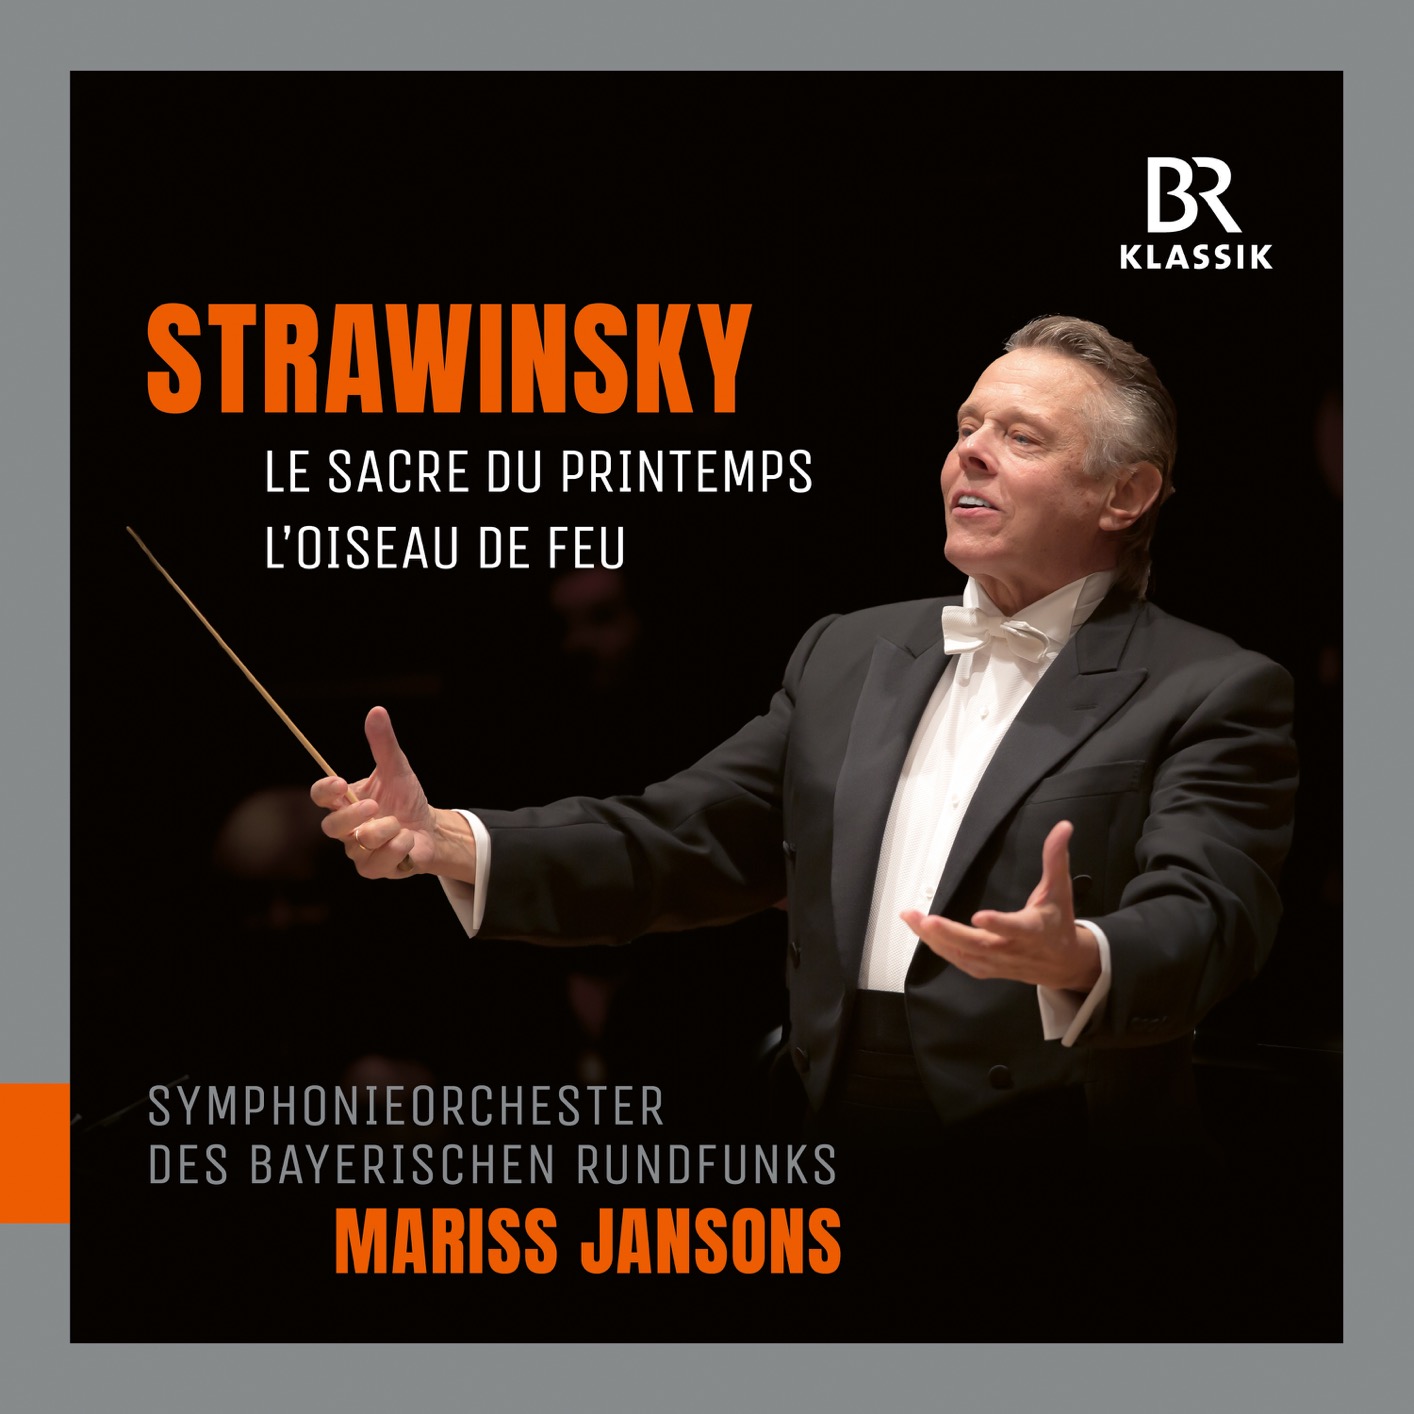 Mariss Jansons - Stravinsky: Le sacre du printemps & The Firebird Suite (2018) [FLAC 24bit/48kHz]